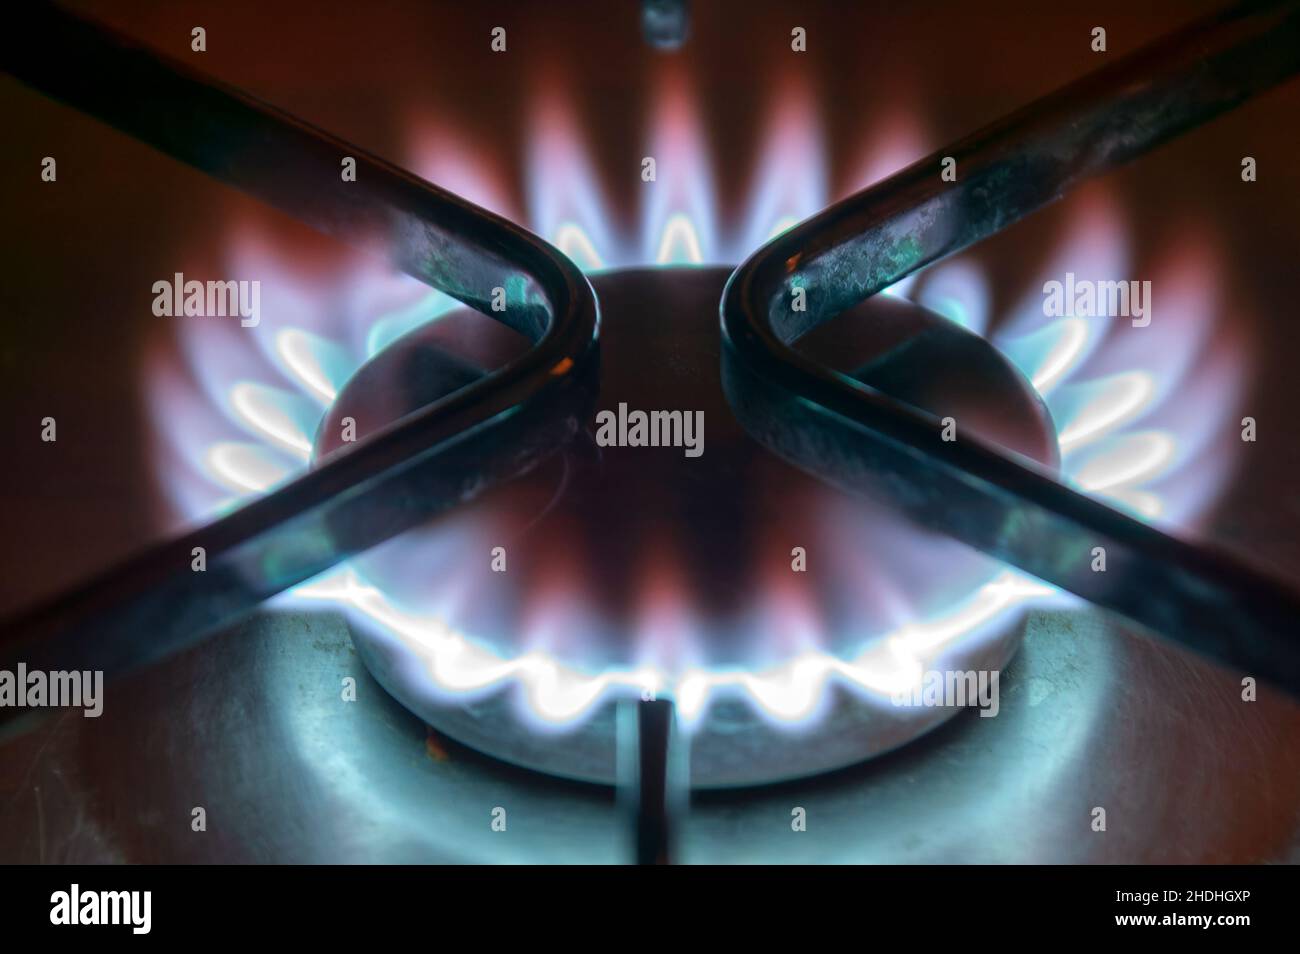 Bruciatore a gas fornello stufa con una fiamma blu e rossa che è un combustibile fossile non verde che causa il riscaldamento globale e danni ambientali, primo piano stock pho Foto Stock